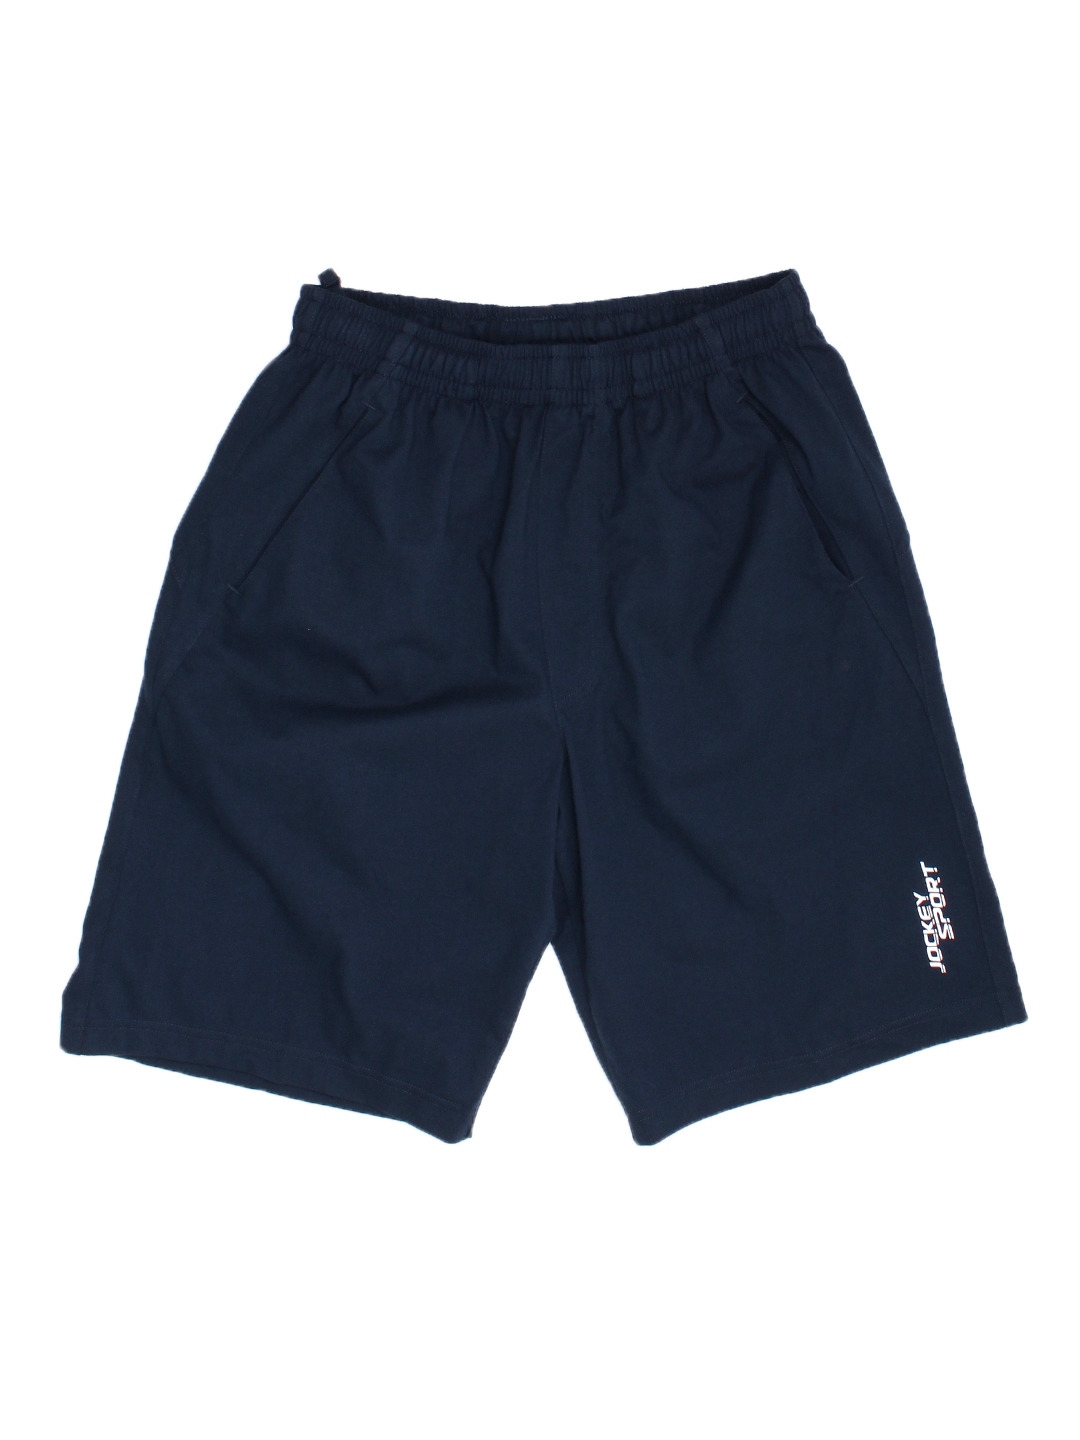 Buy Jockey Men Navy Blue Solid Sport Shorts - Shorts for Men 9867705 ...